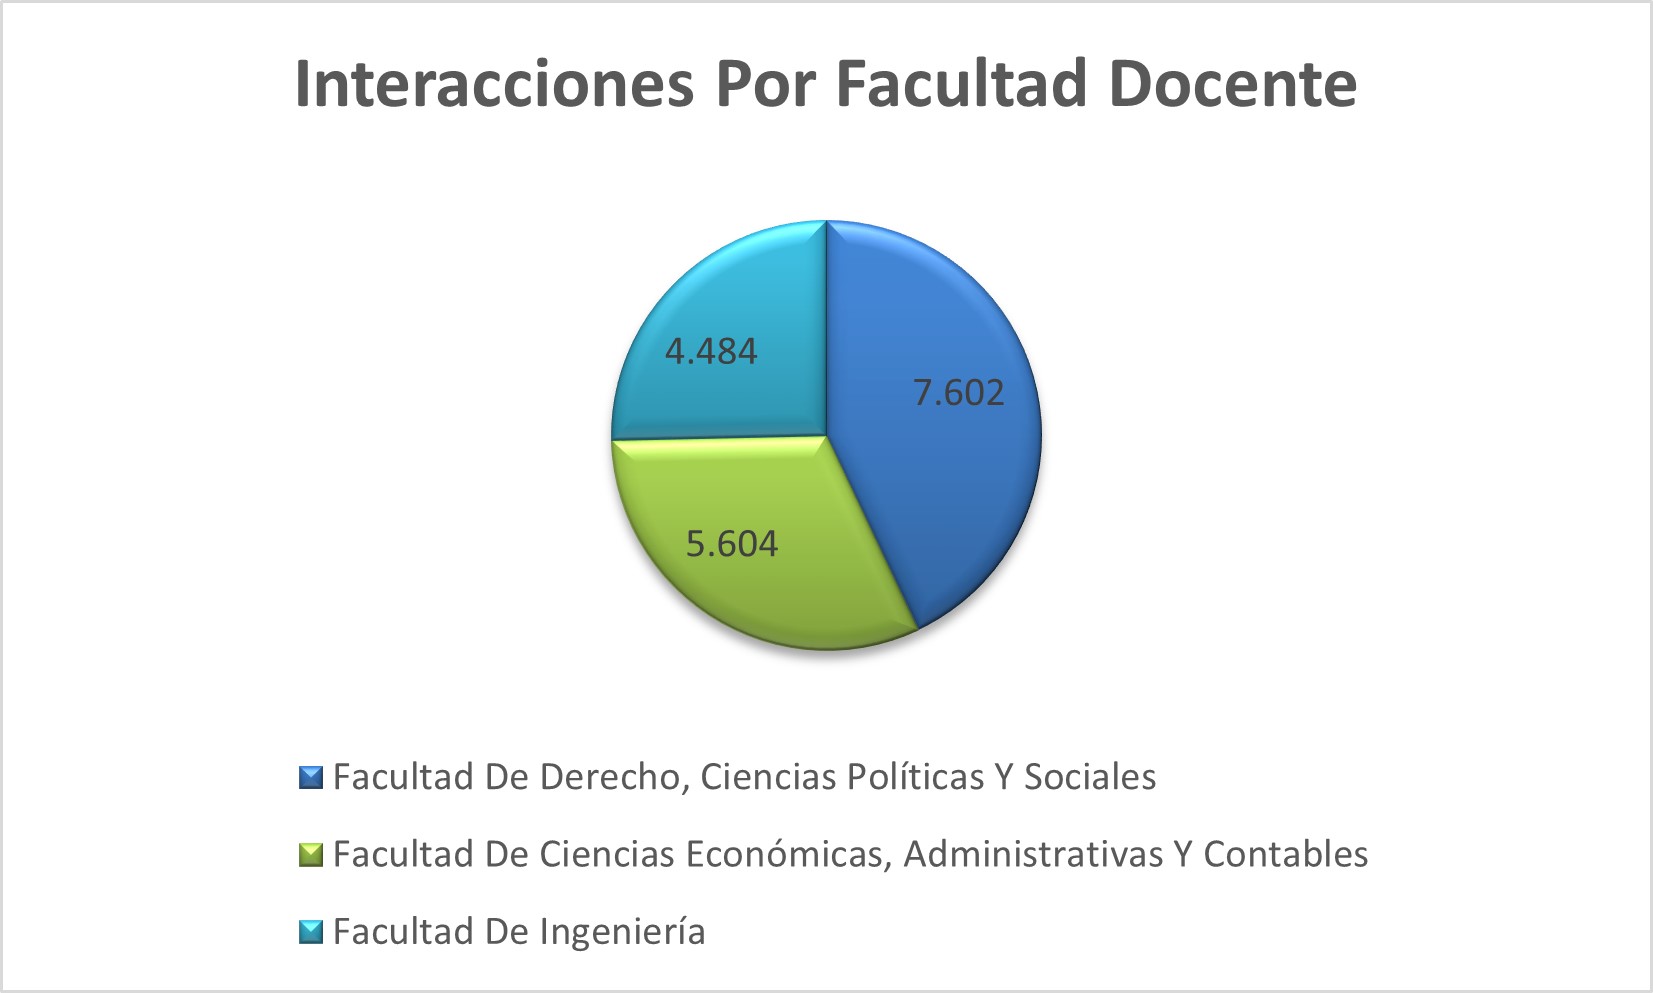 Interacciones_Por_Facultad_Docente